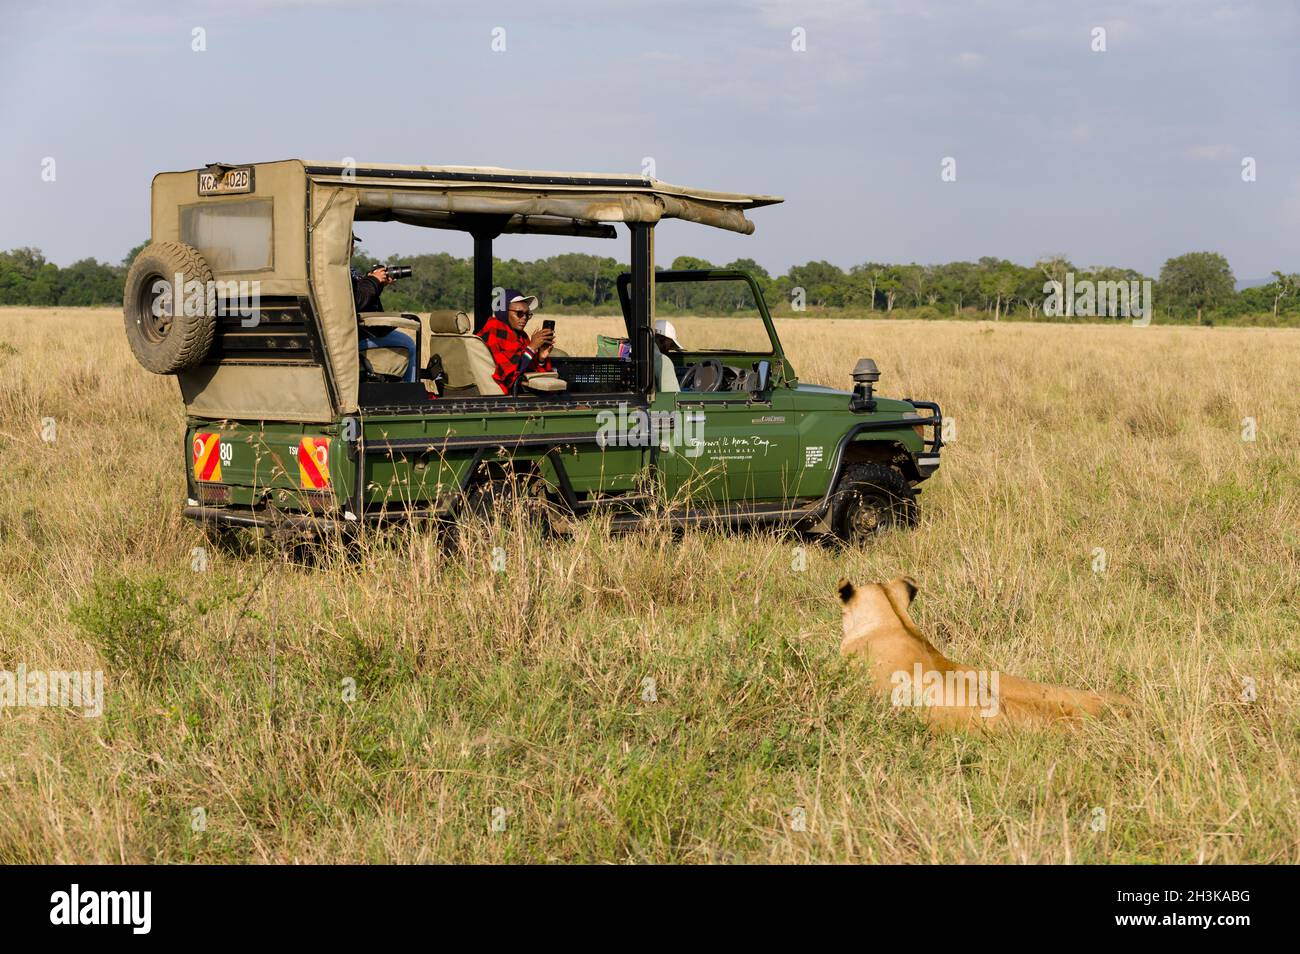 Tourists sat watching a lion in an open 4x4 Toyota Landcruiser, Masai Mara, Kenya Stock Photo